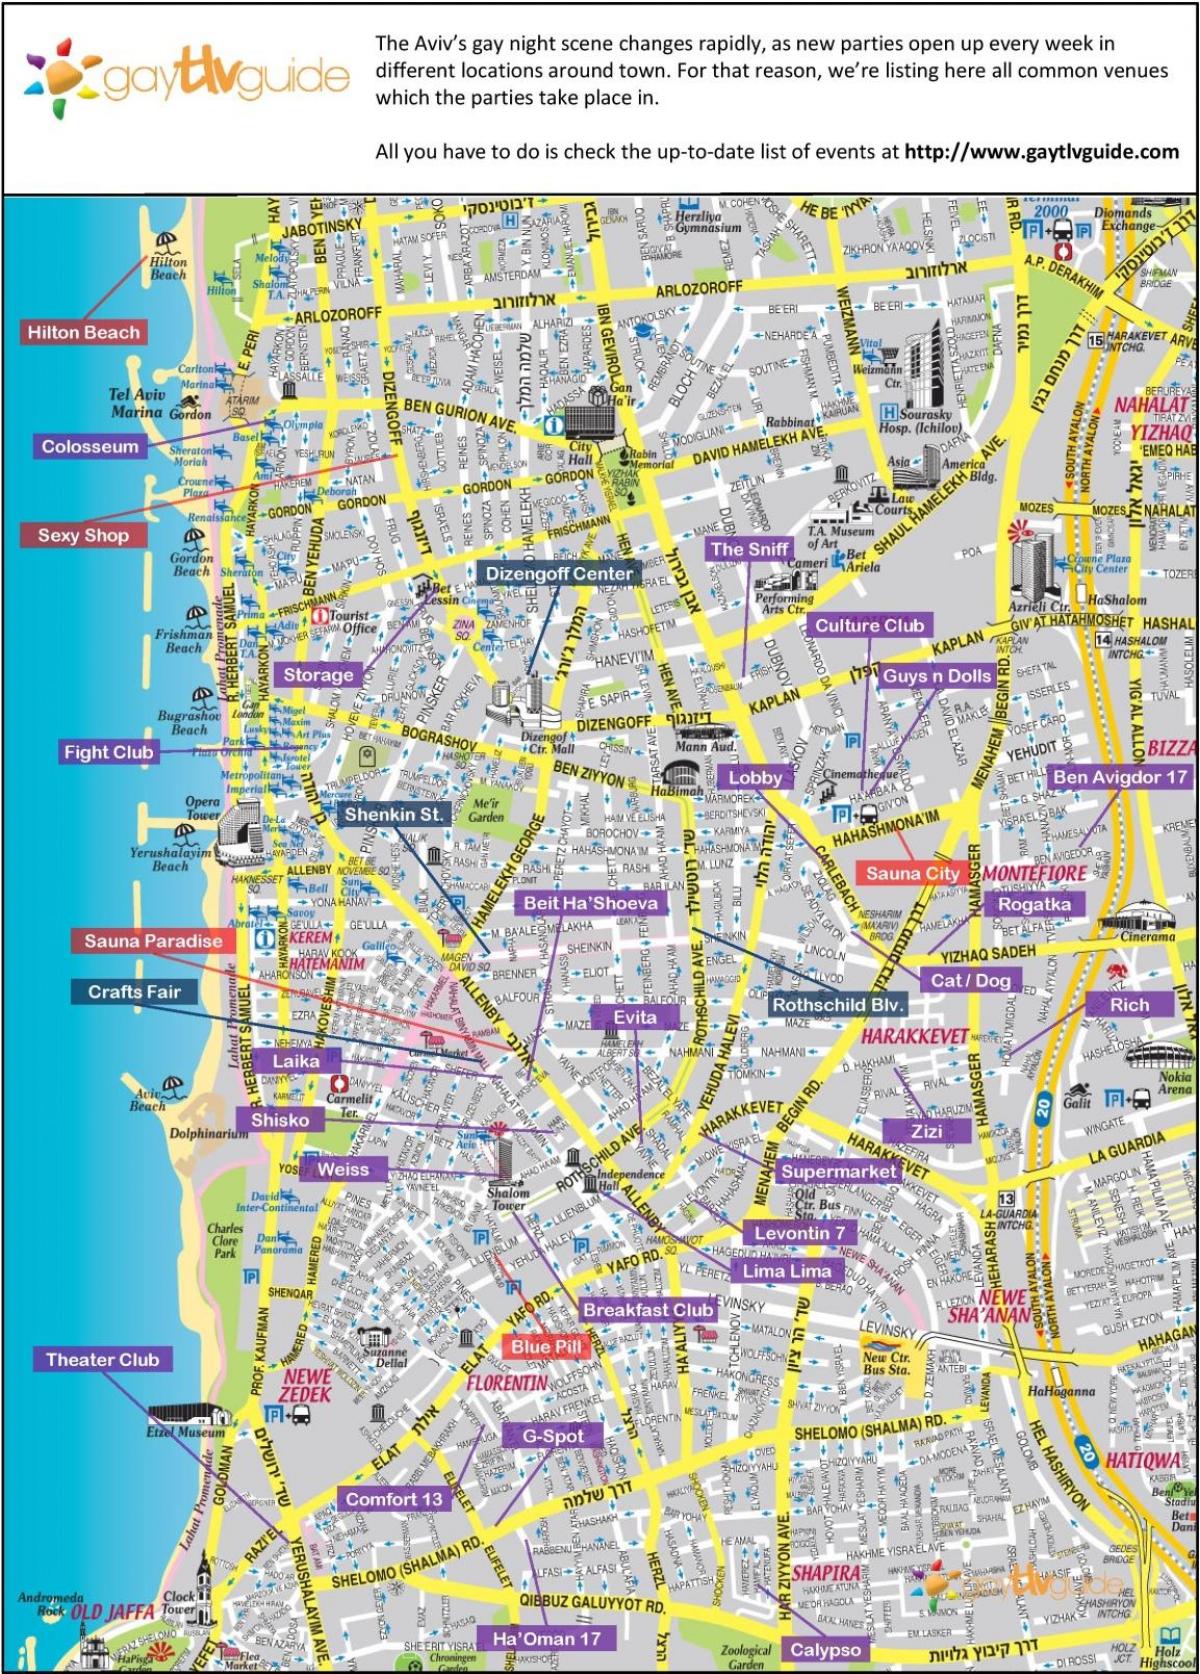 bản đồ của người đồng tính Tel Aviv